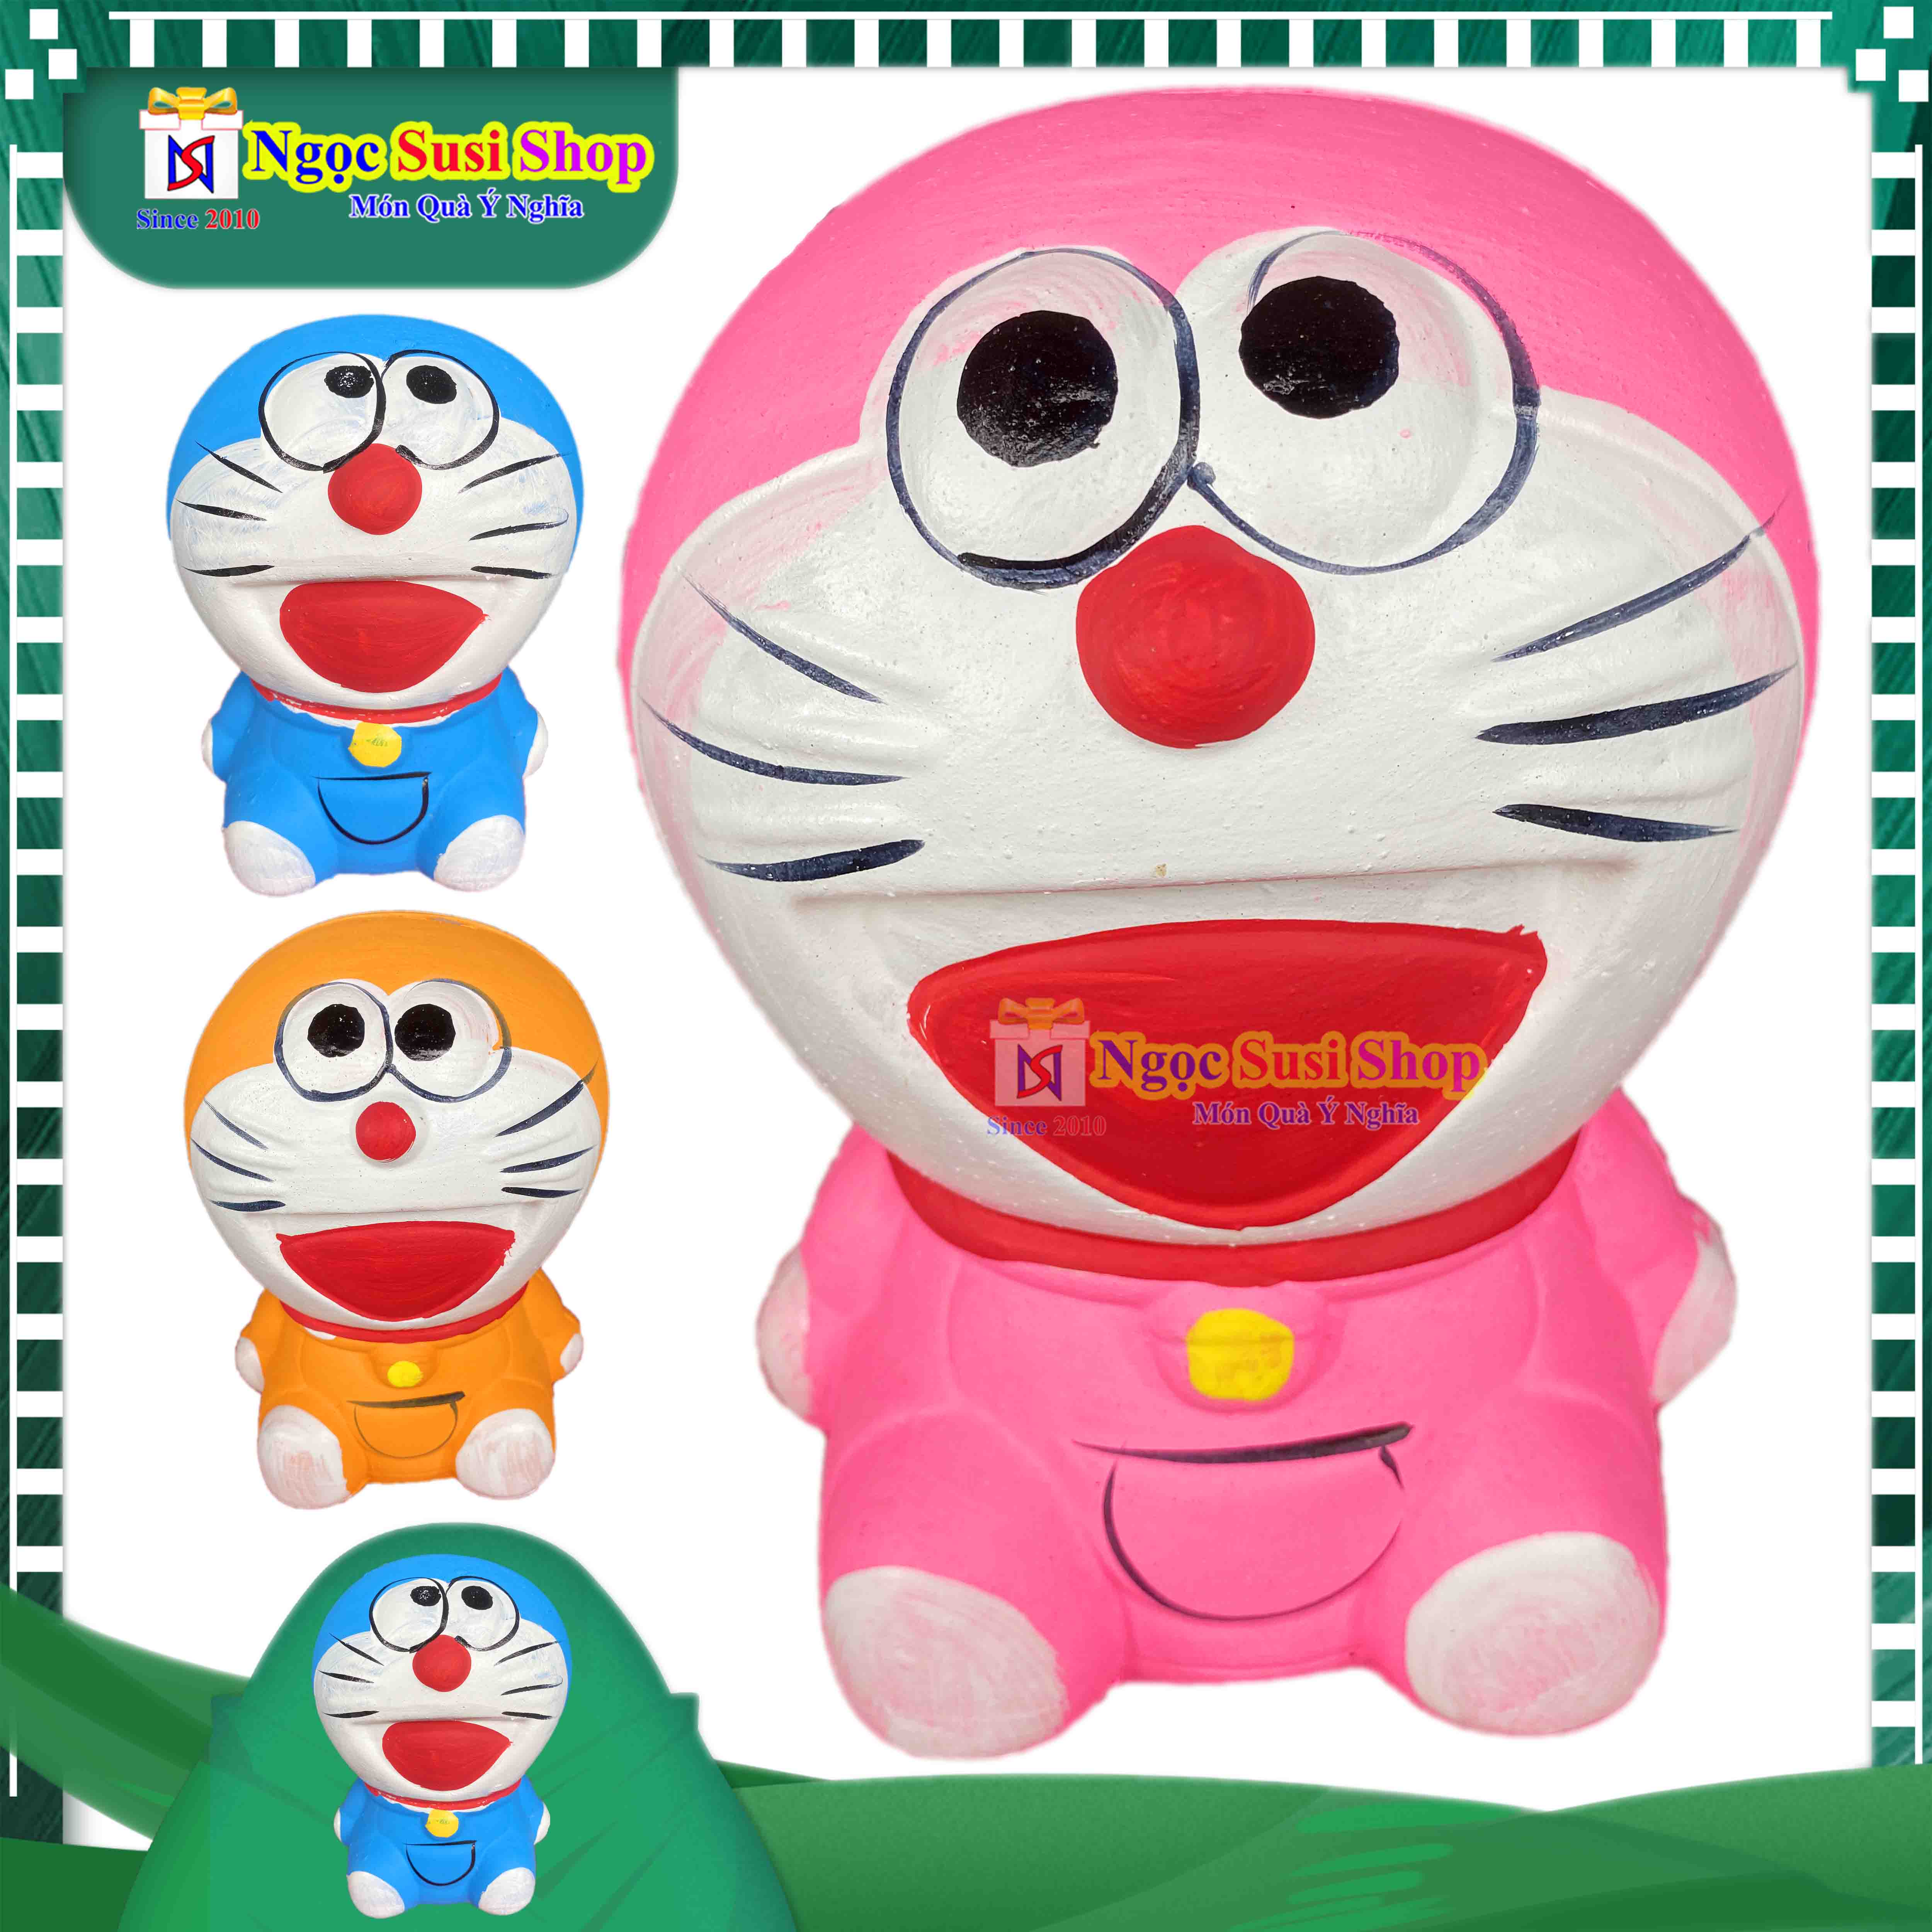 Doraemon cute giá rẻ sẽ mang đến cho bạn những giây phút thư giãn và cảm xúc tươi vui khi được trải nghiệm với chú mèo máy. Hãy cùng tìm hiểu những chiếc Doraemon xinh xắn và giá rẻ để có thể sở hữu một chú mèo mà người ta luôn mơ ước.